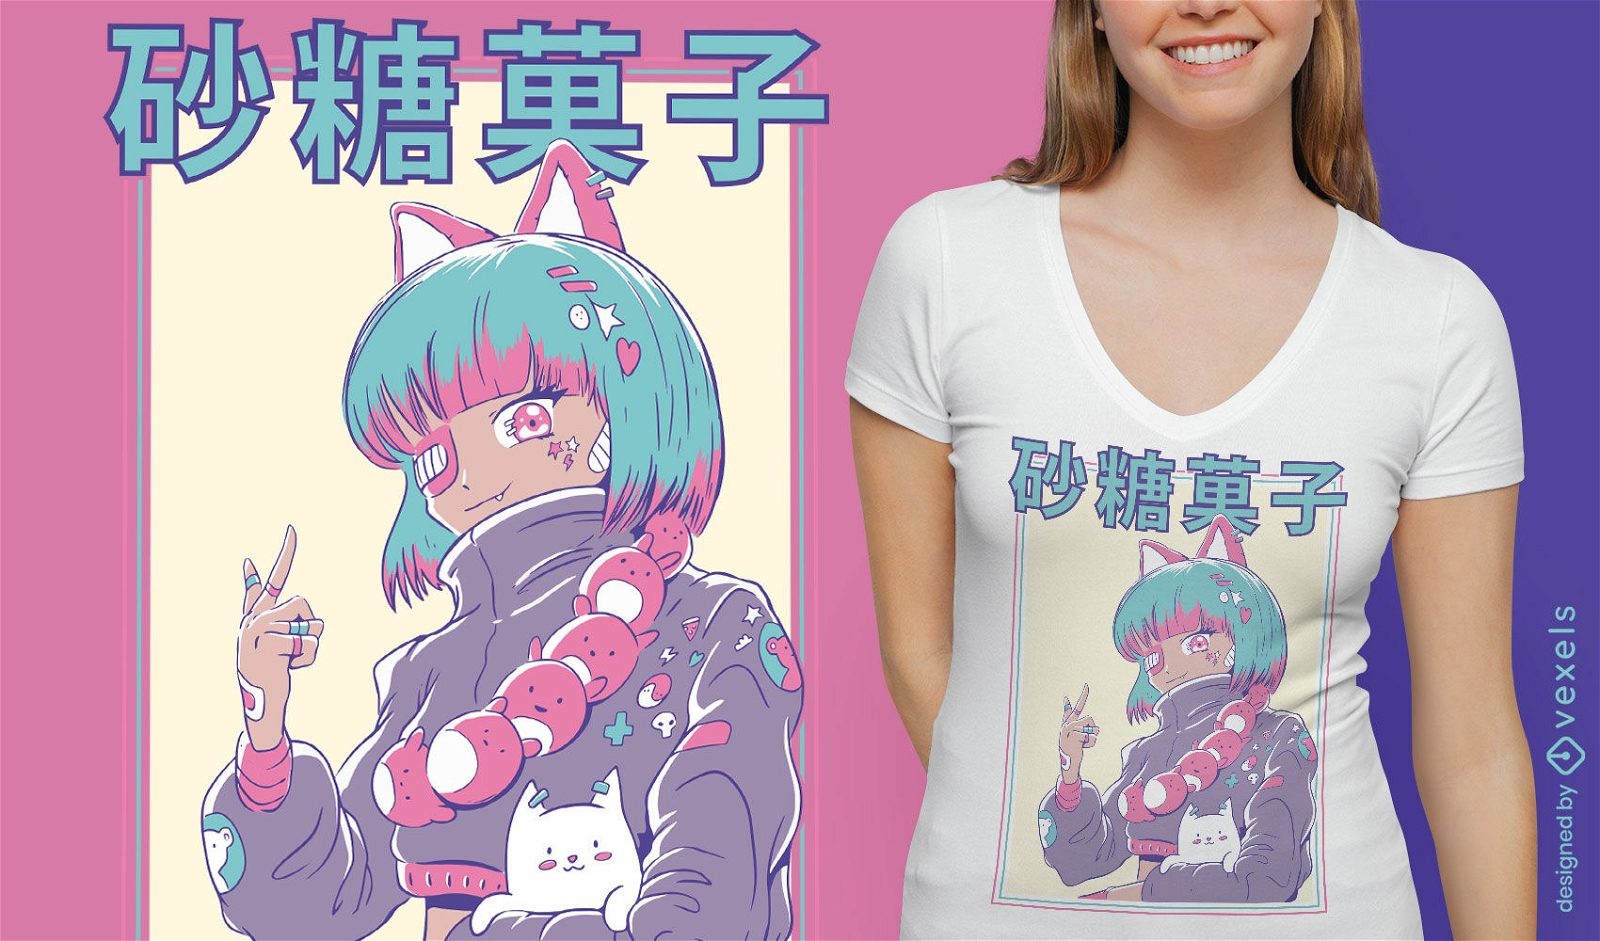 Niedliches Anime-M?dchen mit Augenklappen-T-Shirt-Design